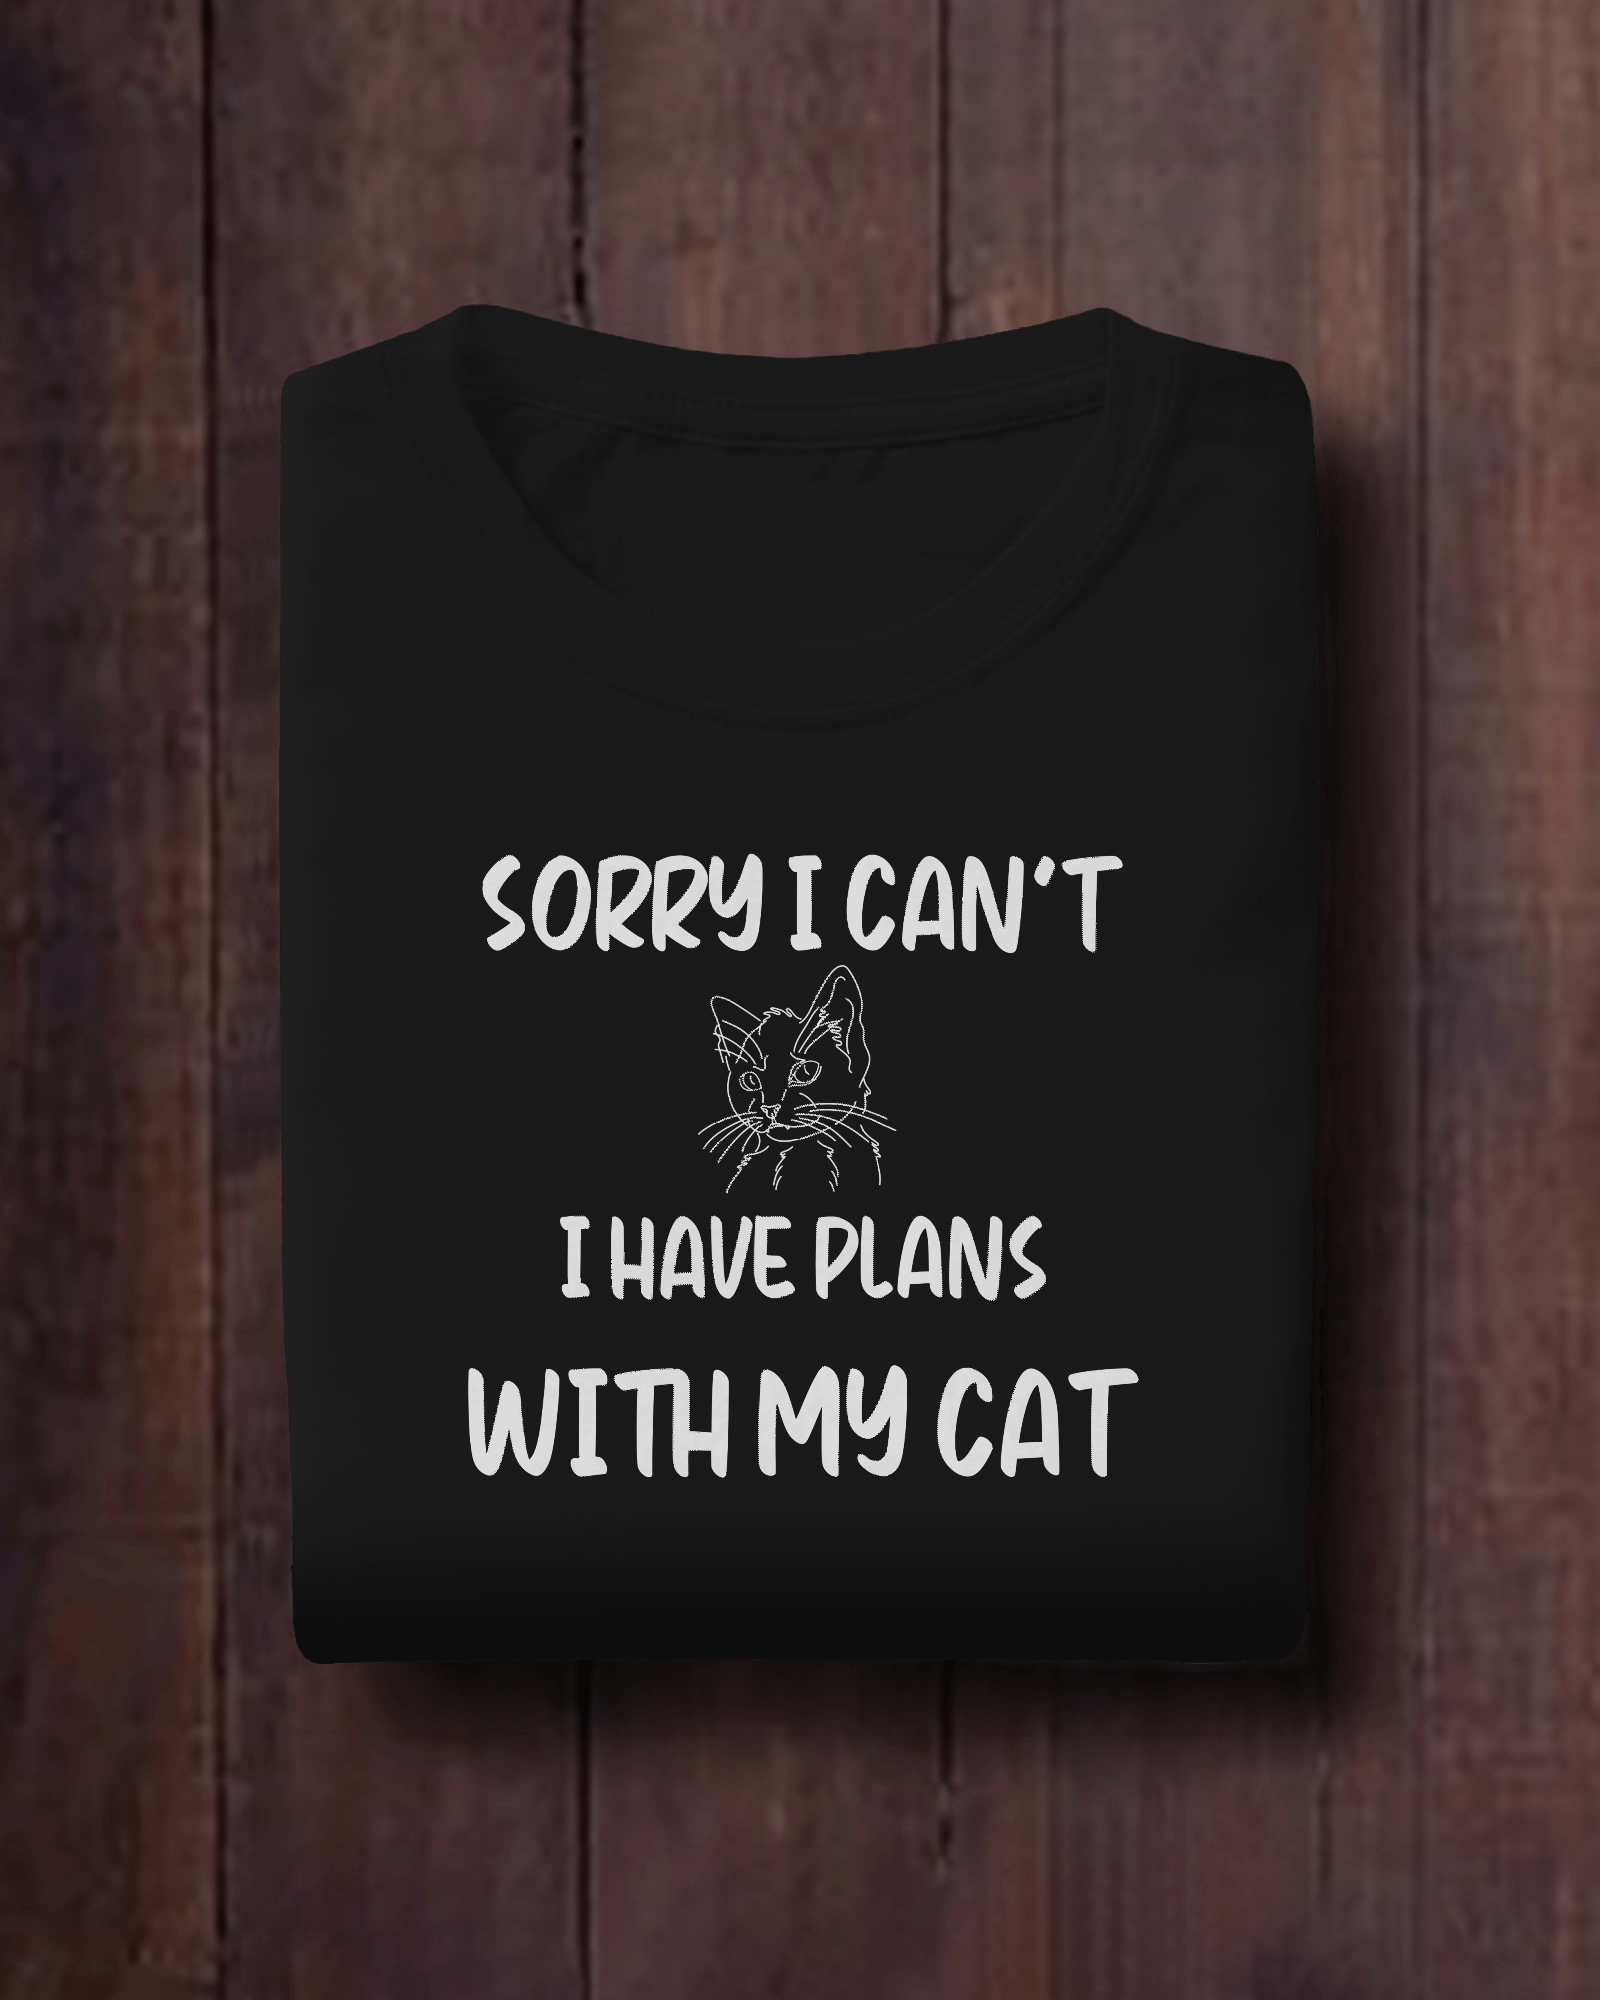 cat shirt for men